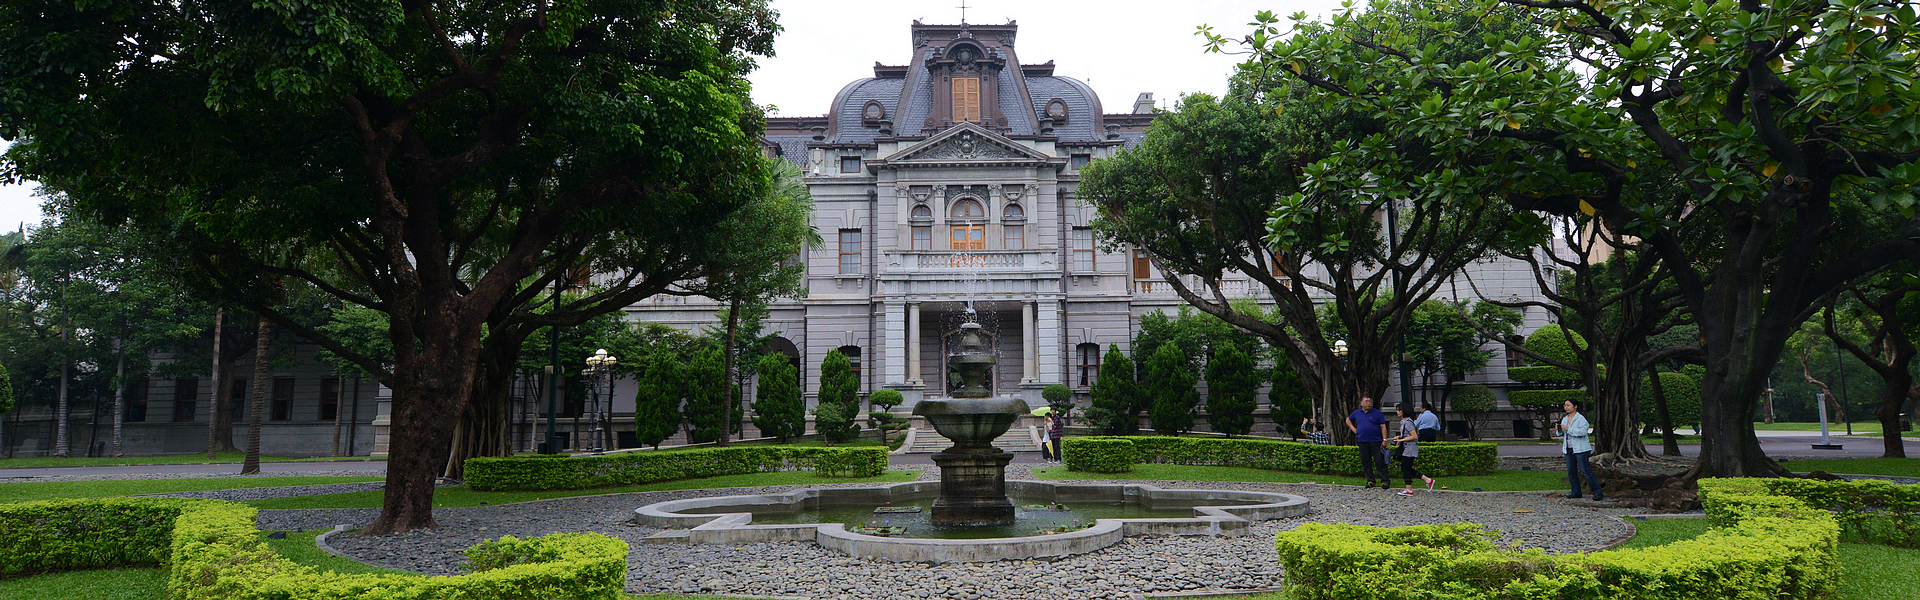 臺北賓館 Taipei Guest House